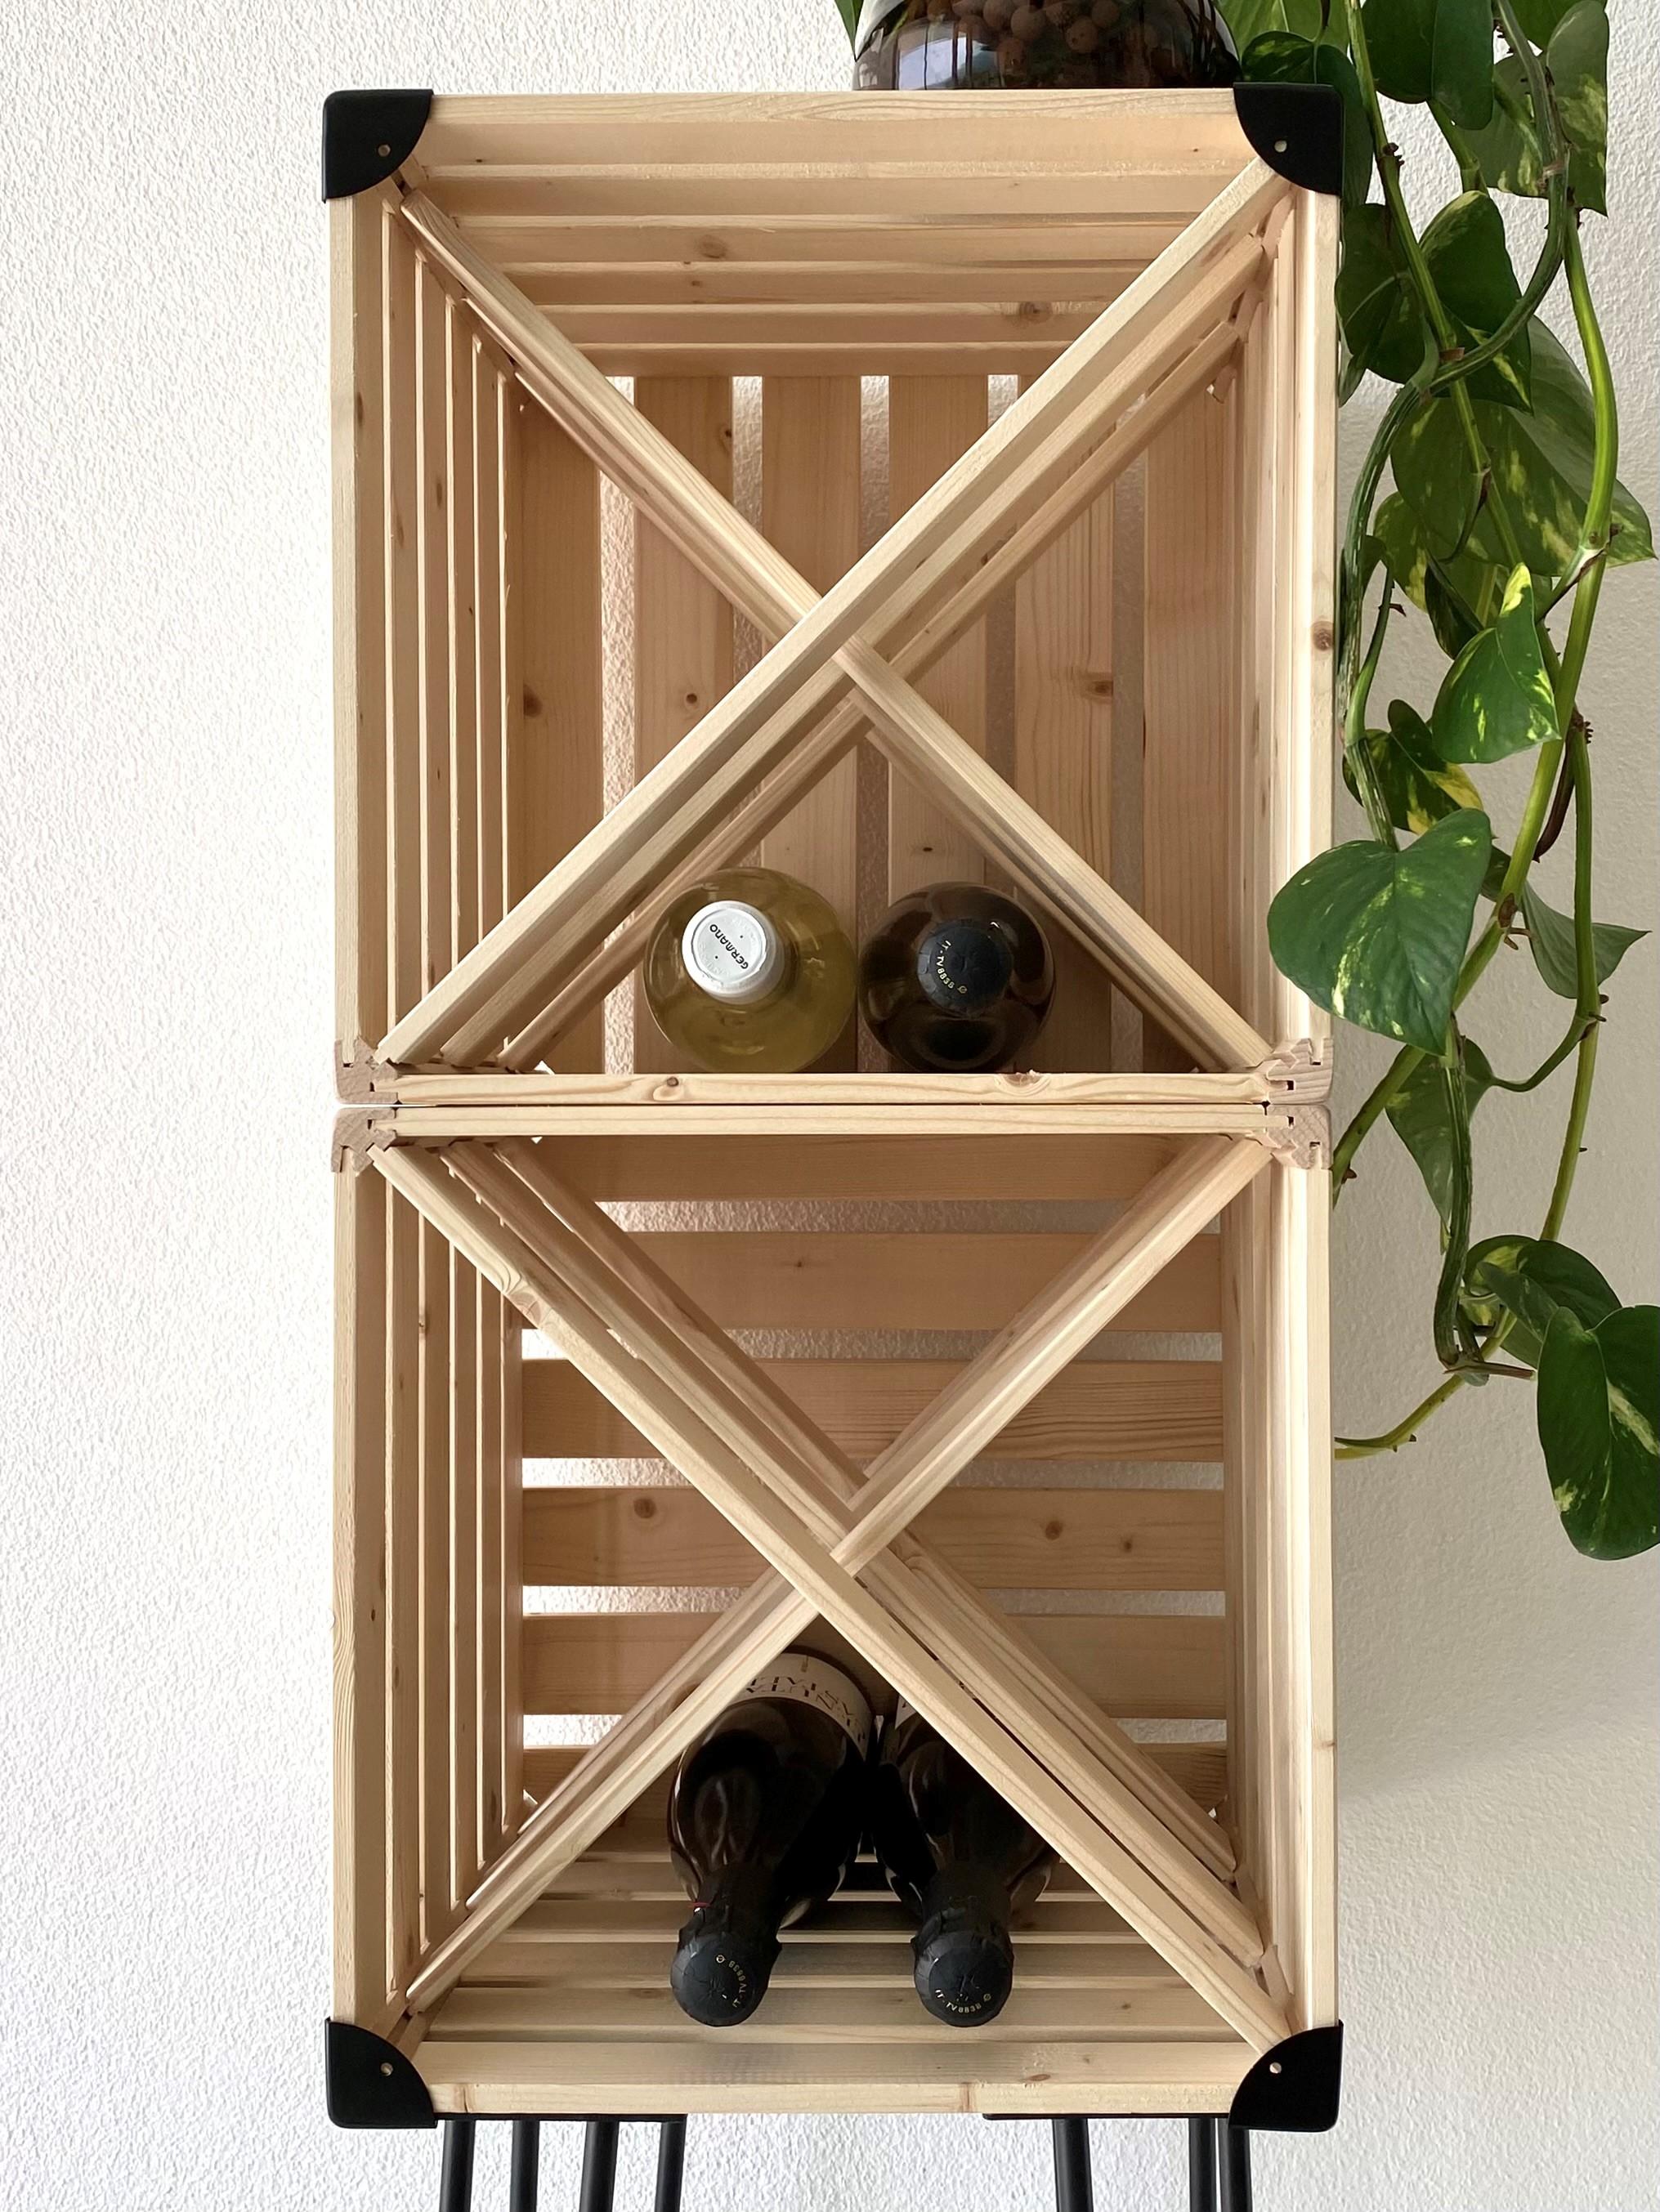 Wine Rack / Cantinetta Vini in legno